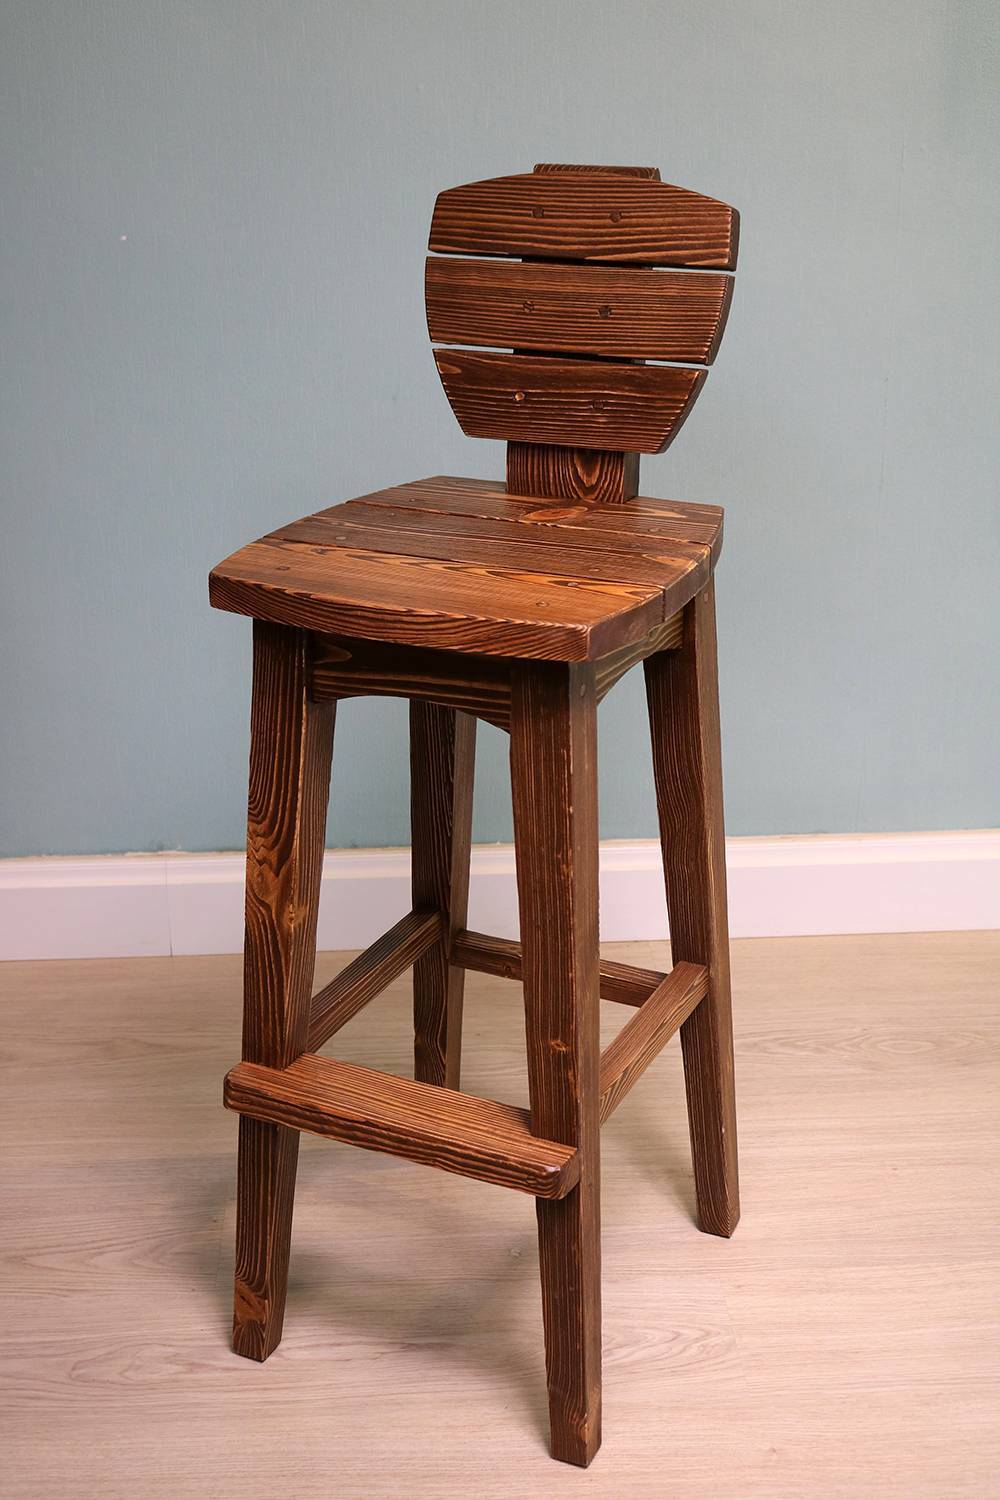 Высота барного стула: стандарт, как подобрать высоту барного стула, как сделать стул своими руками